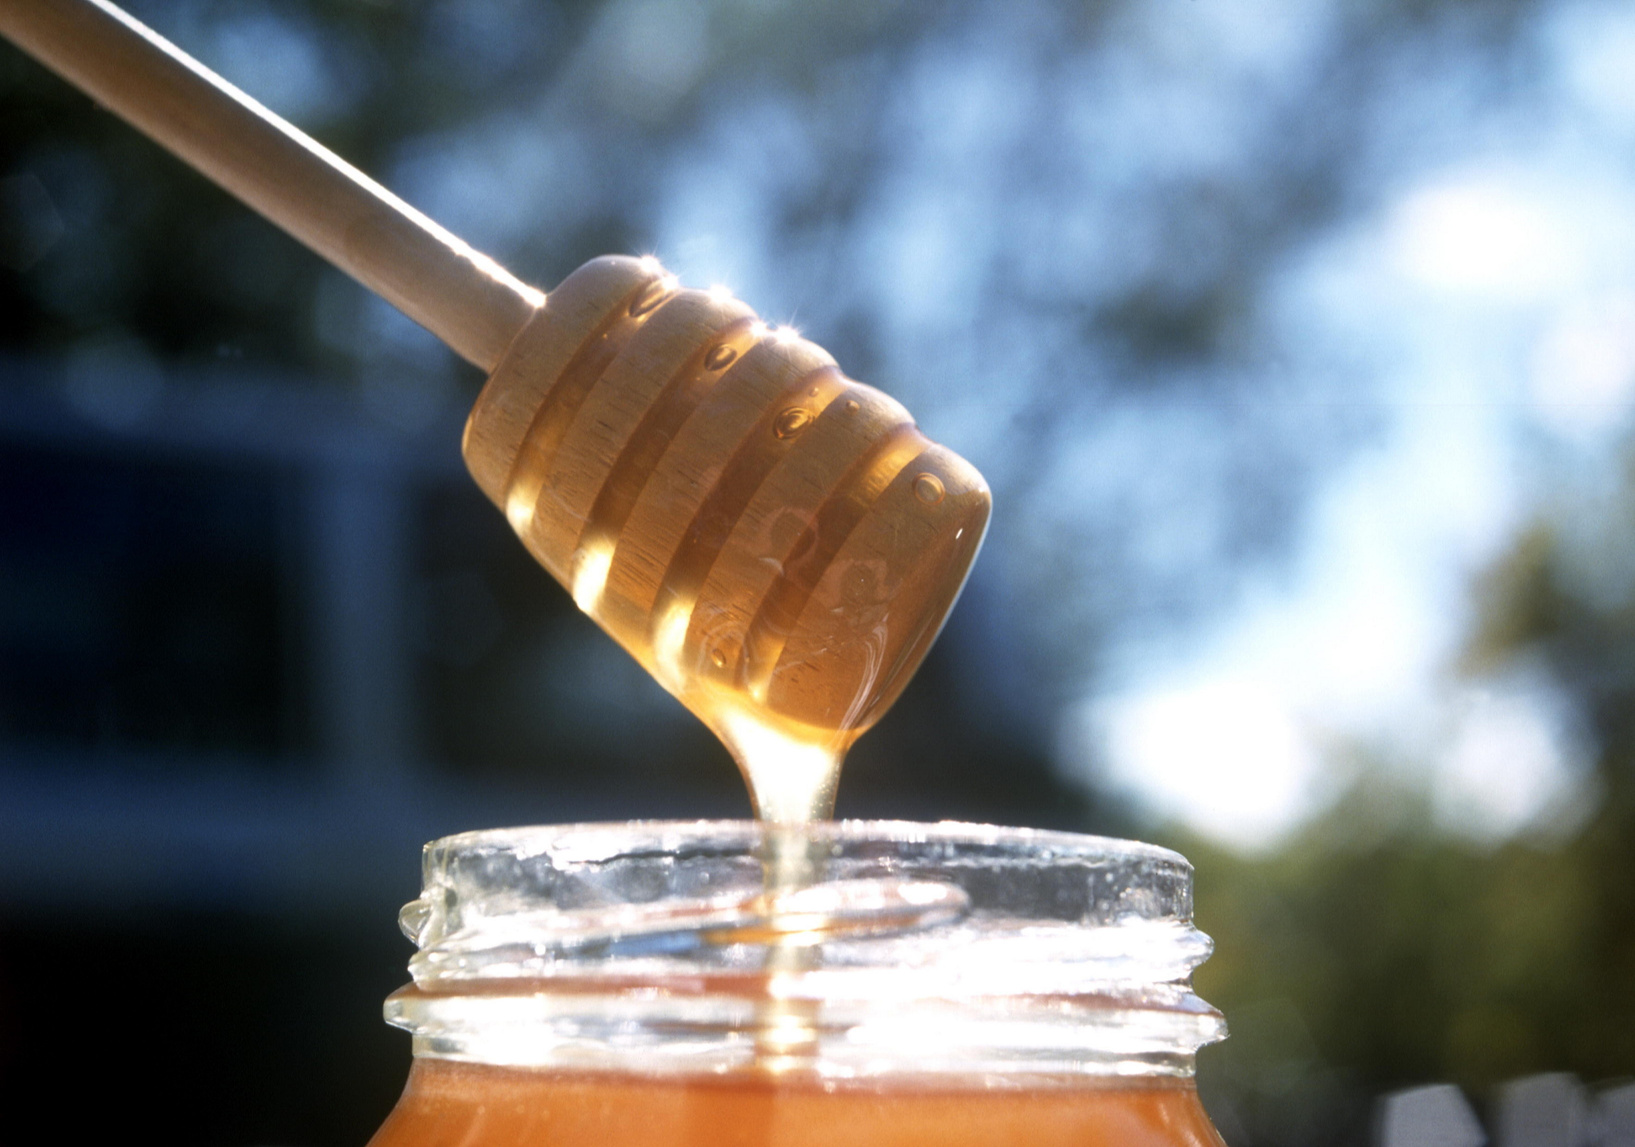 Australian Honey